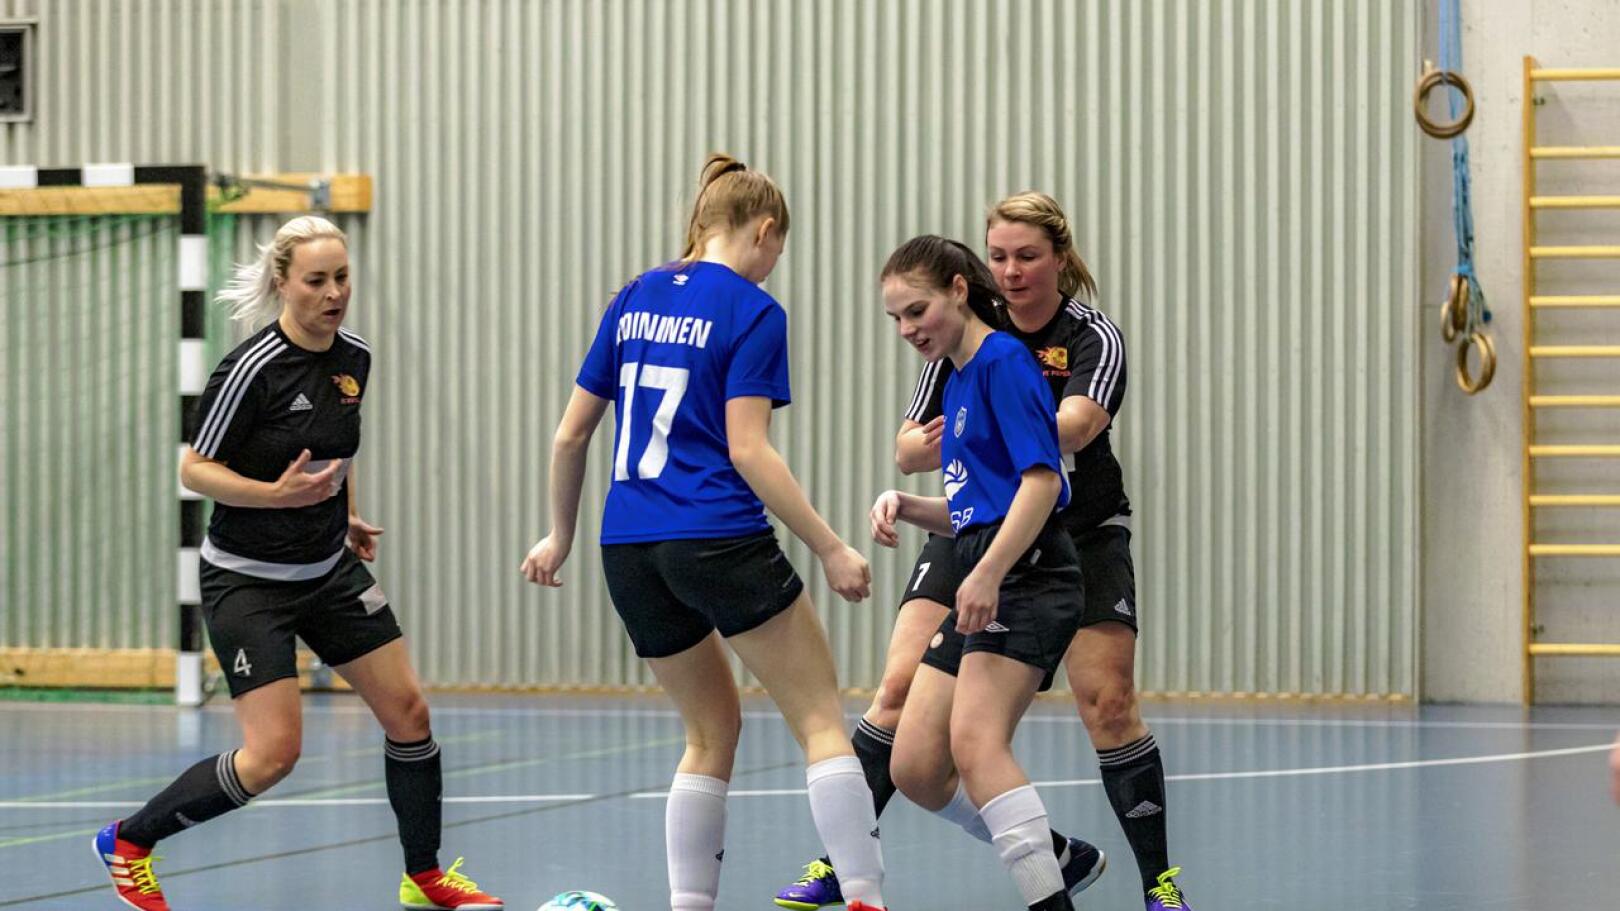 FC Folk pelasi kaudella kaksi tasaista taistelua ylivieskalaista Populaa vastaan, joista molemmat päättyivät Populan maalin voittoon. Kuvassa FC Folkin Aino Roininen ja Siina Heitto.